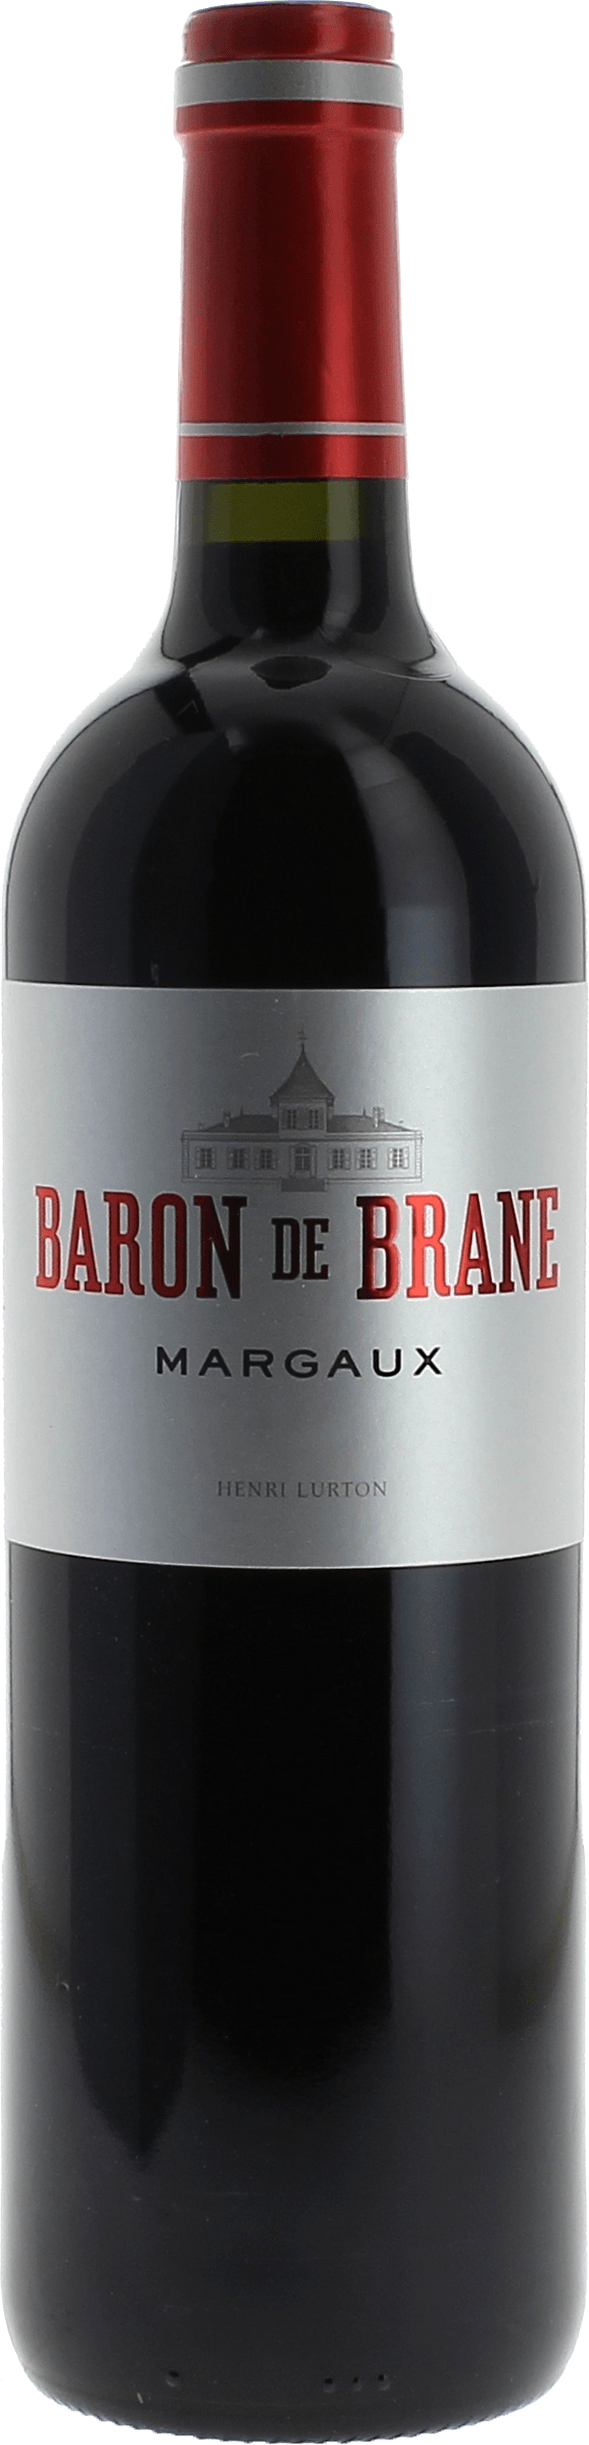 Baron de brane 2015 2nd vin du Chteau Brane Cantenac Margaux, Bordeaux rouge